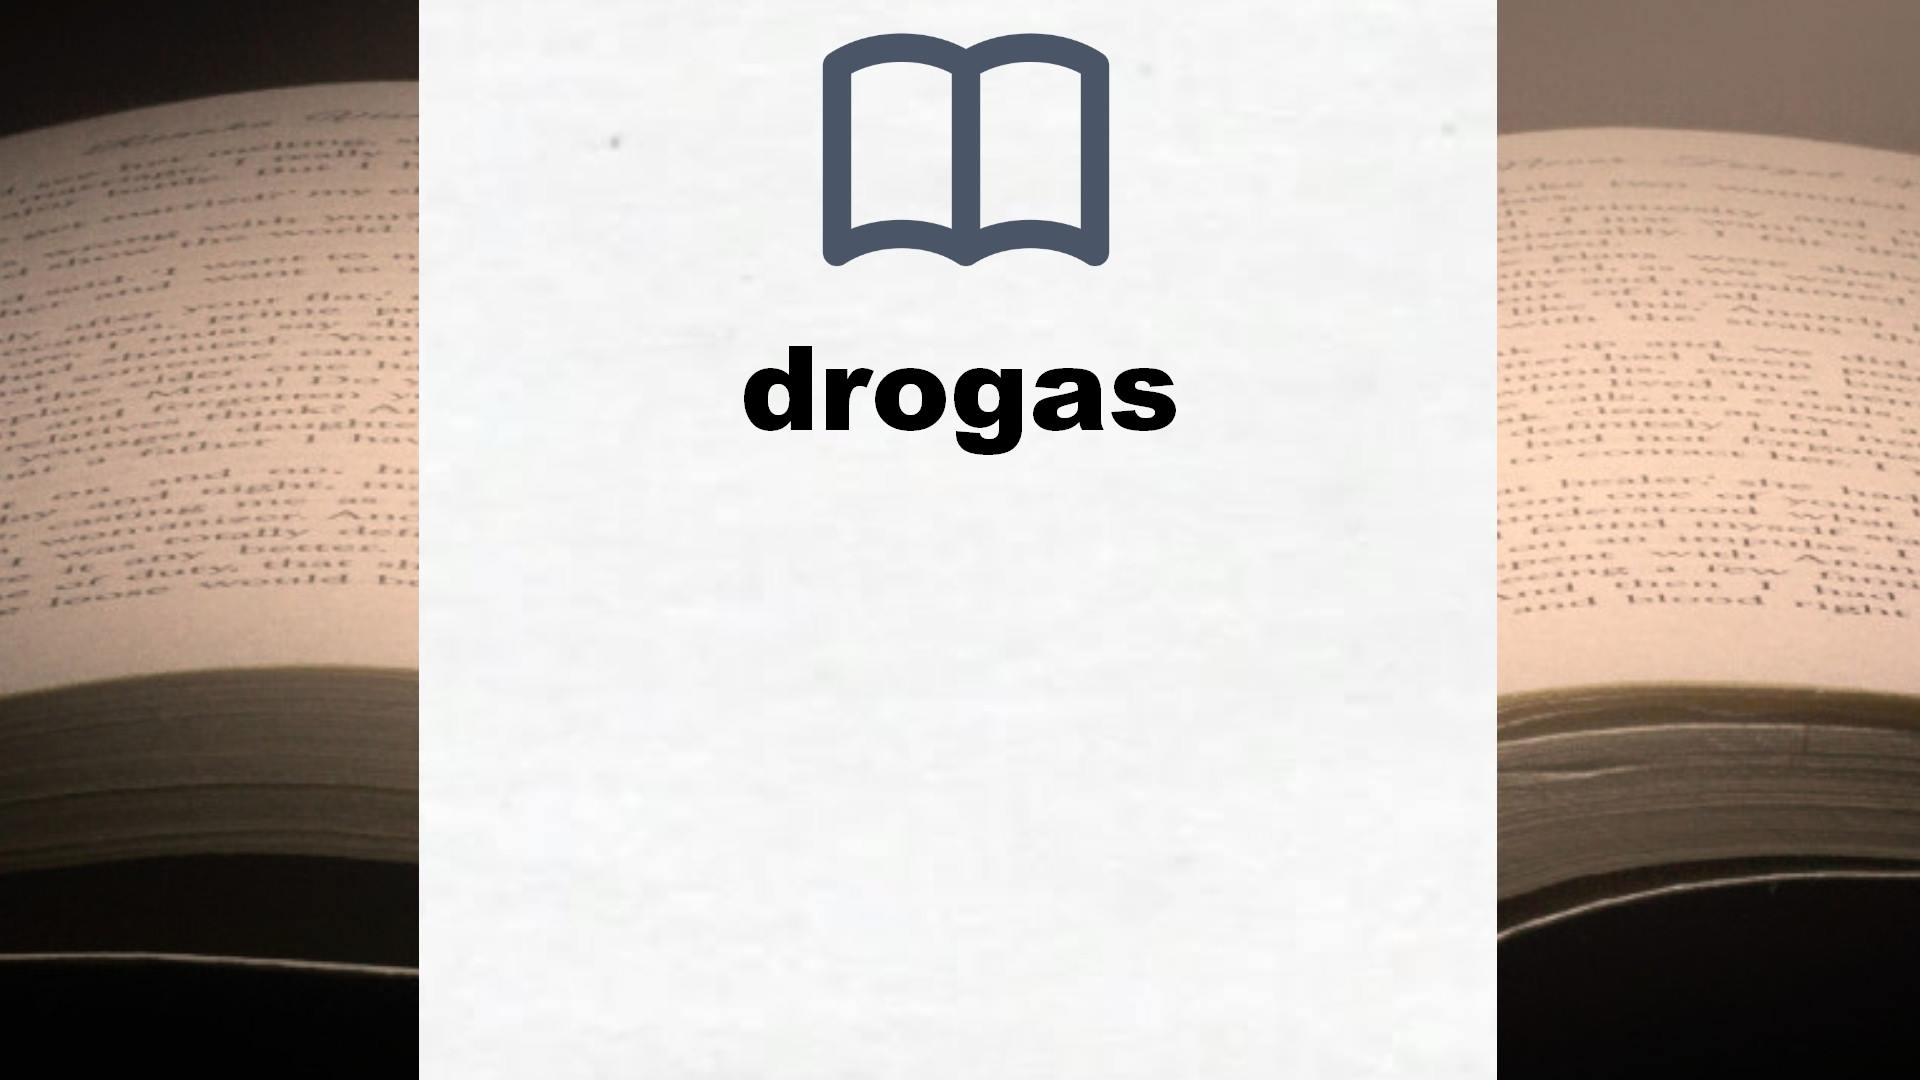 Libros sobre drogas